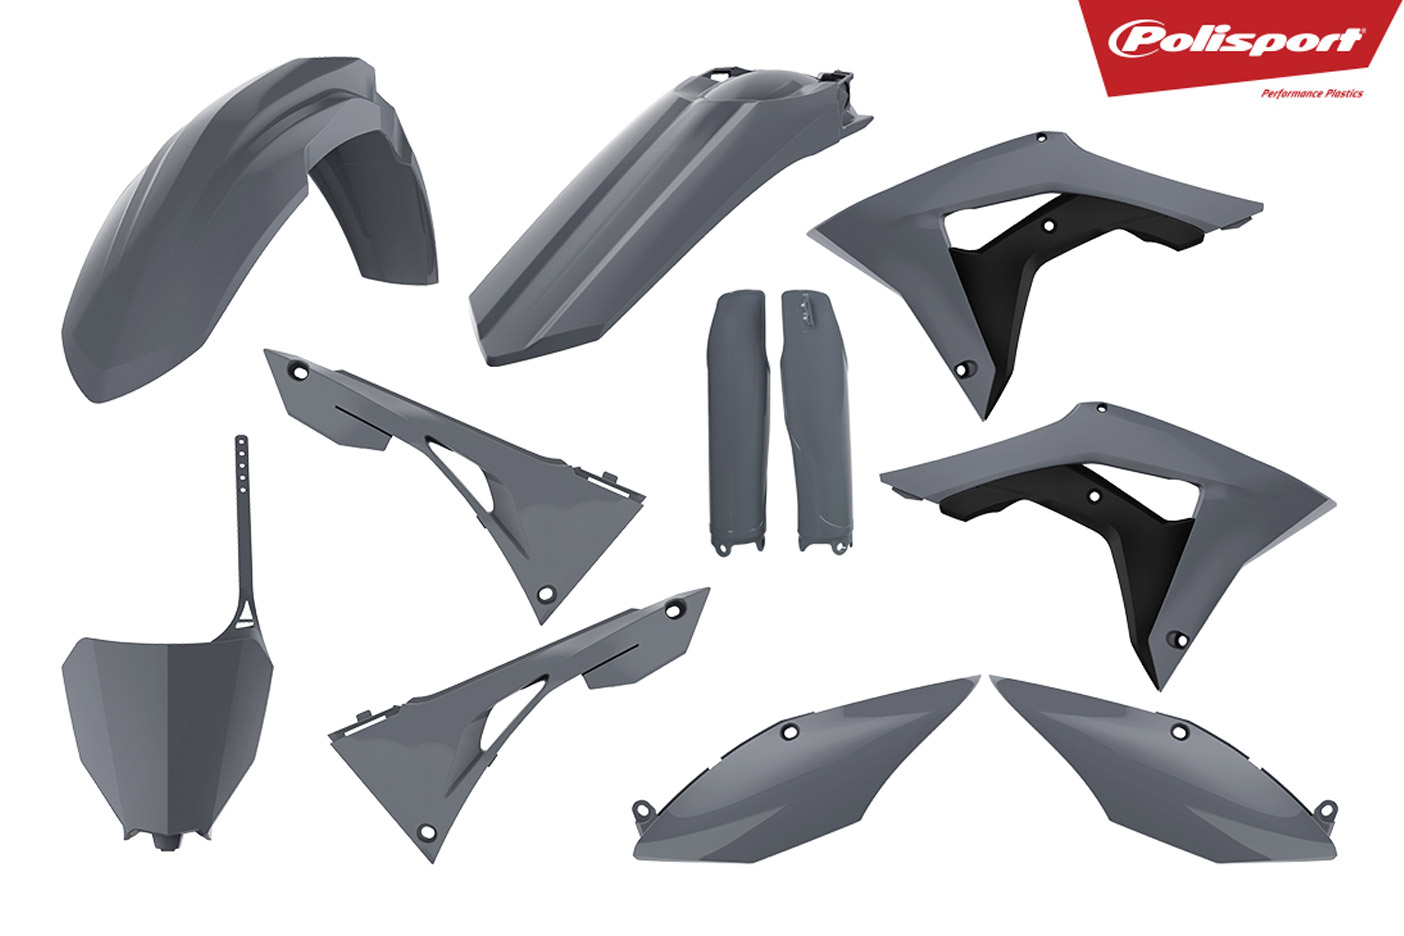 Plastikteile für deine Honda CRF in grau, bestehend aus Frontkotflügel, Heckkotflügel, Tankspoiler, Gabelschoner, Seitenteile, Nummerntafeln und Front-Nummerntafel